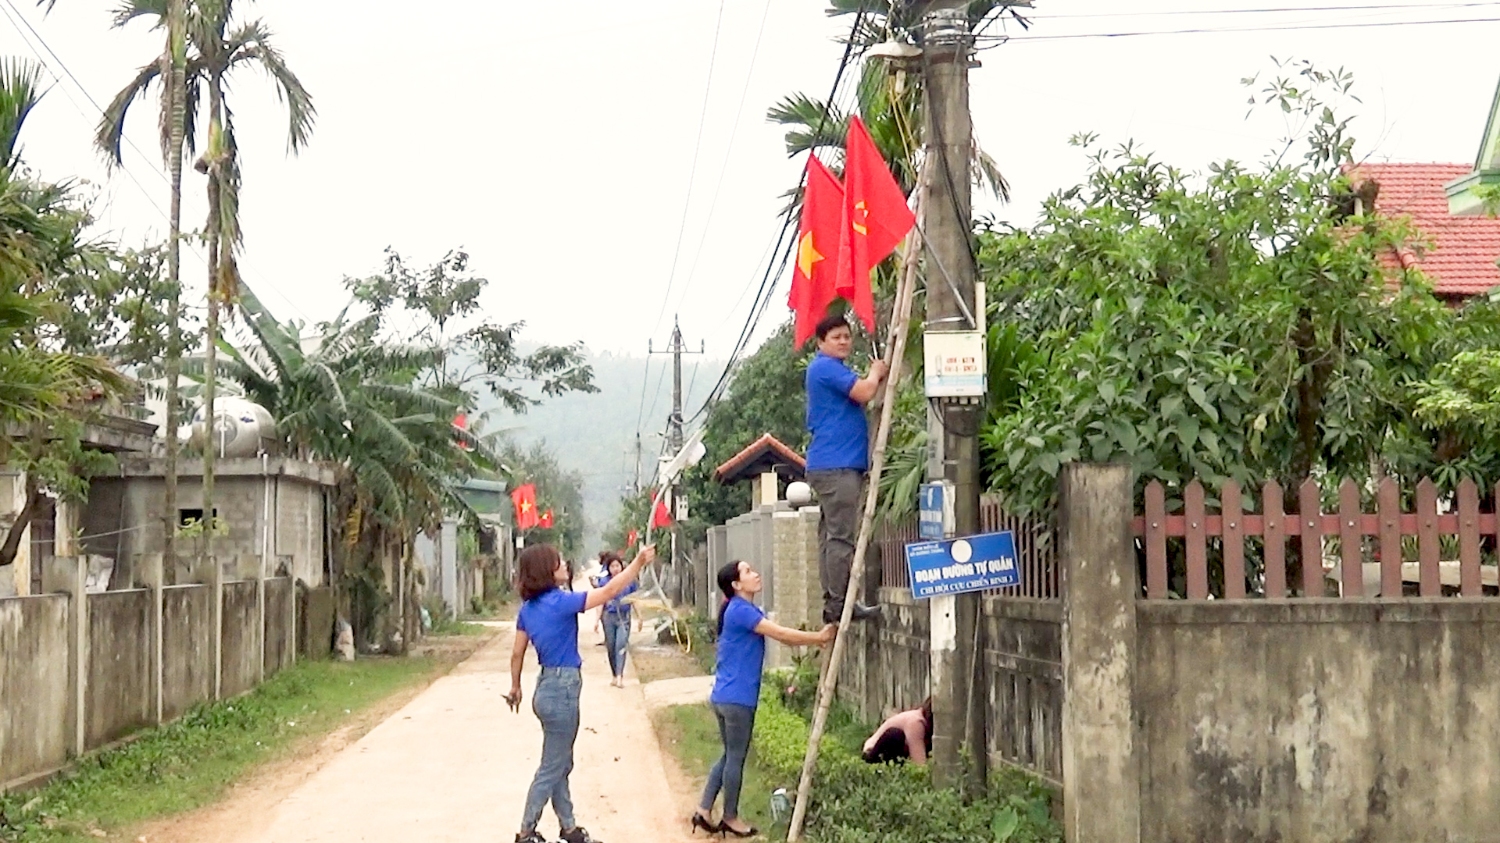 Mô hình thắp sáng đường quê của Đoàn thanh niên tại thôn Biểu lệ, xã Quảng Trung